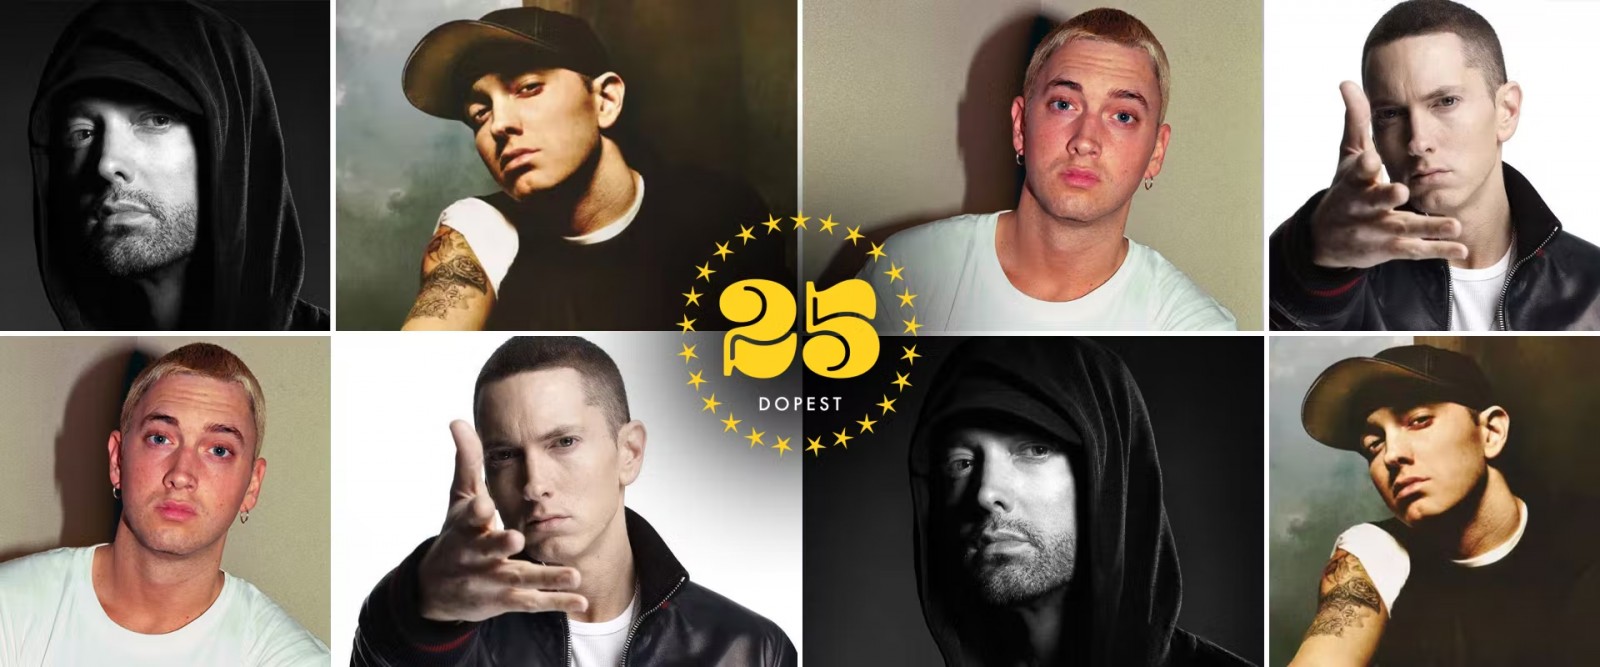 Đây là 25 bài hát hay nhất của Eminem